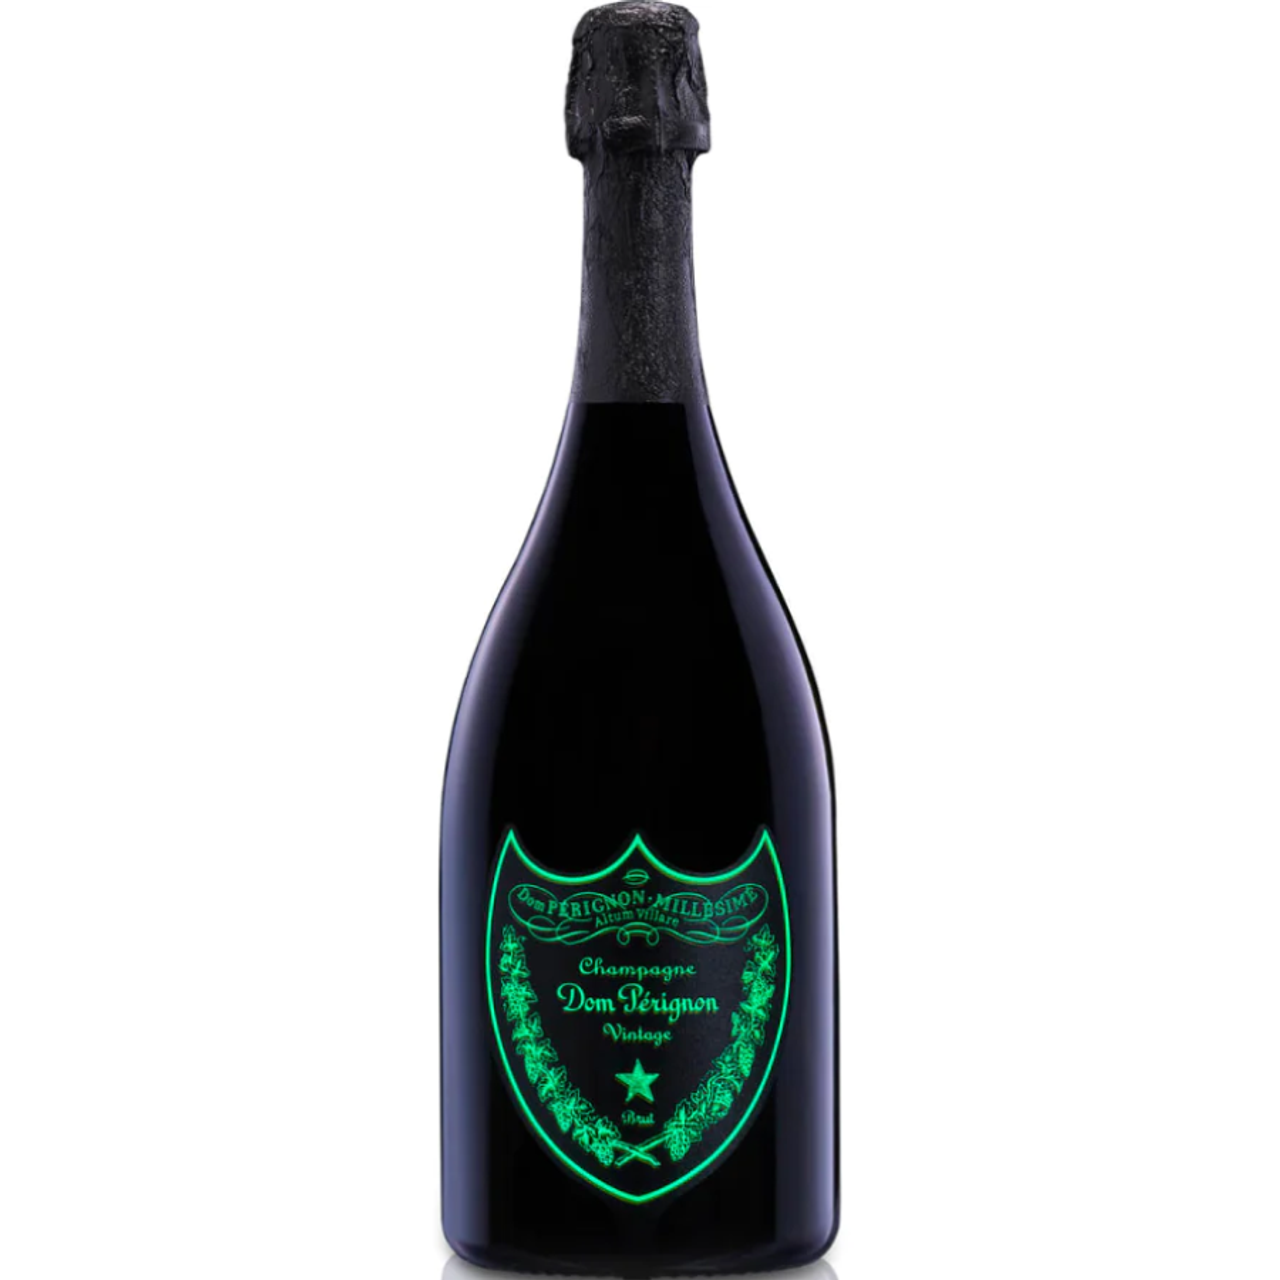 Dom Perignon Champagne 2012 (750 ml) – Straight Up Wines & Liquors